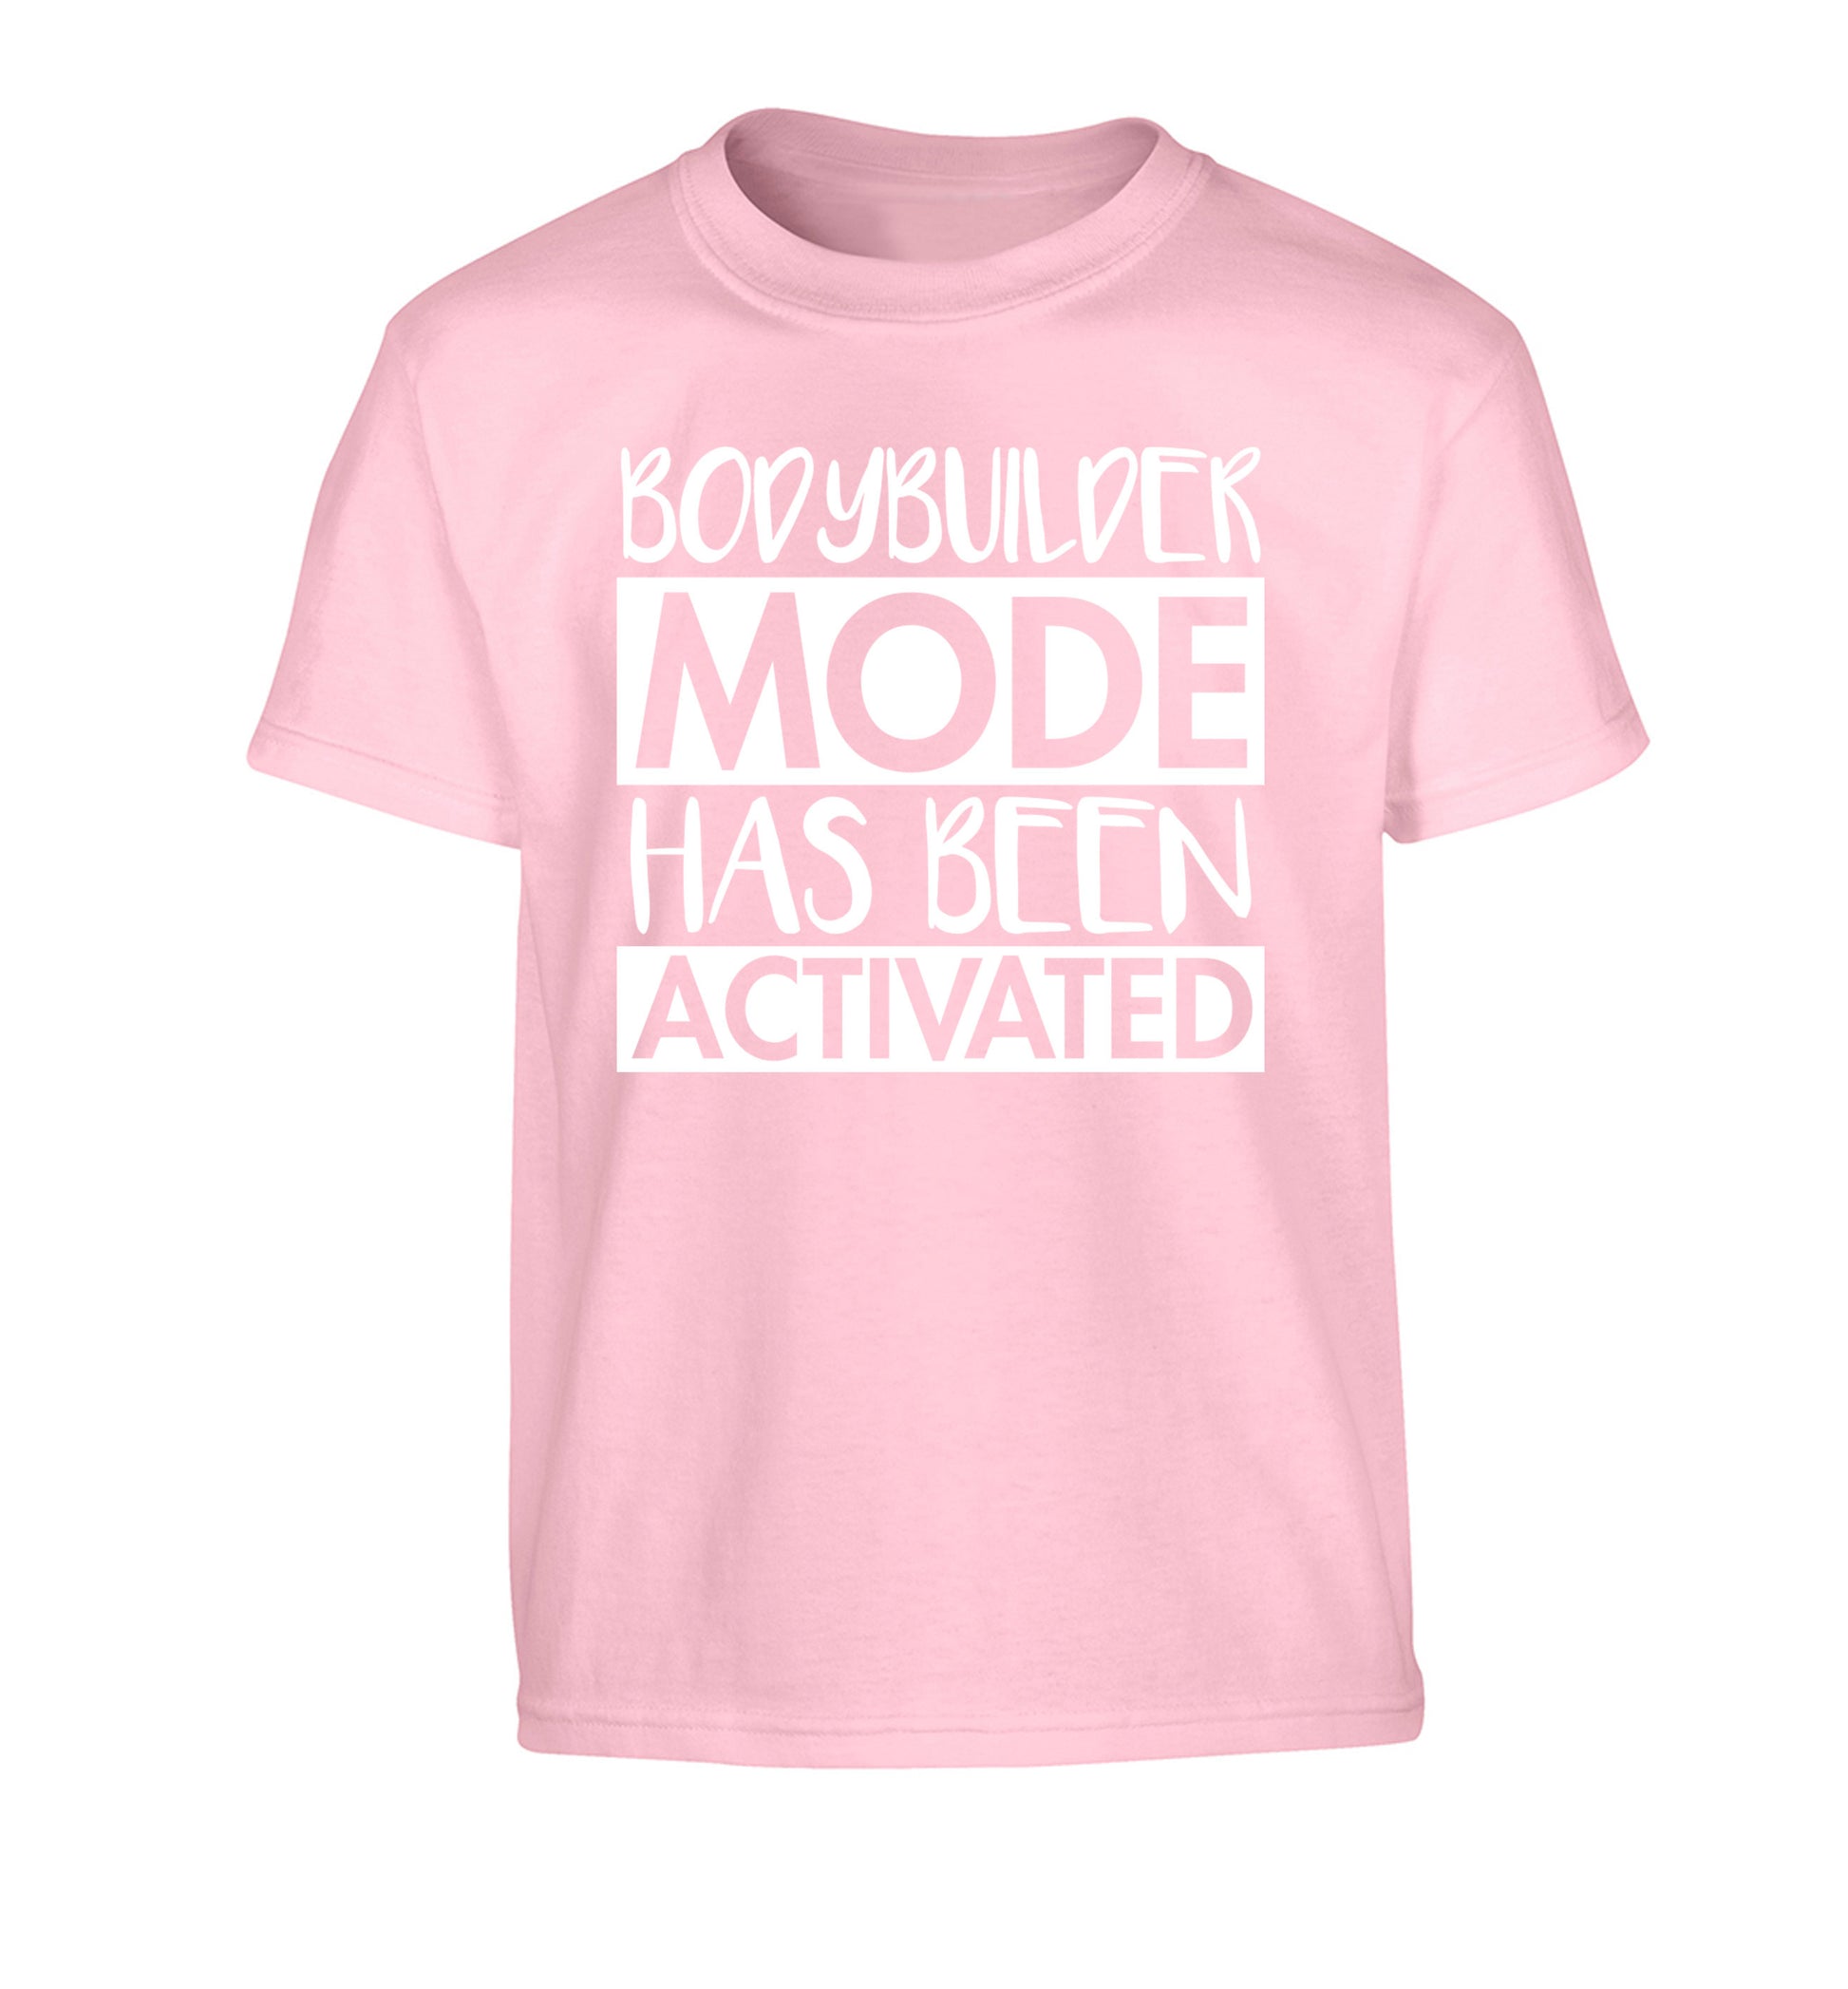 Bodybuilder mode activated Children's light pink Tshirt 12-14 Years